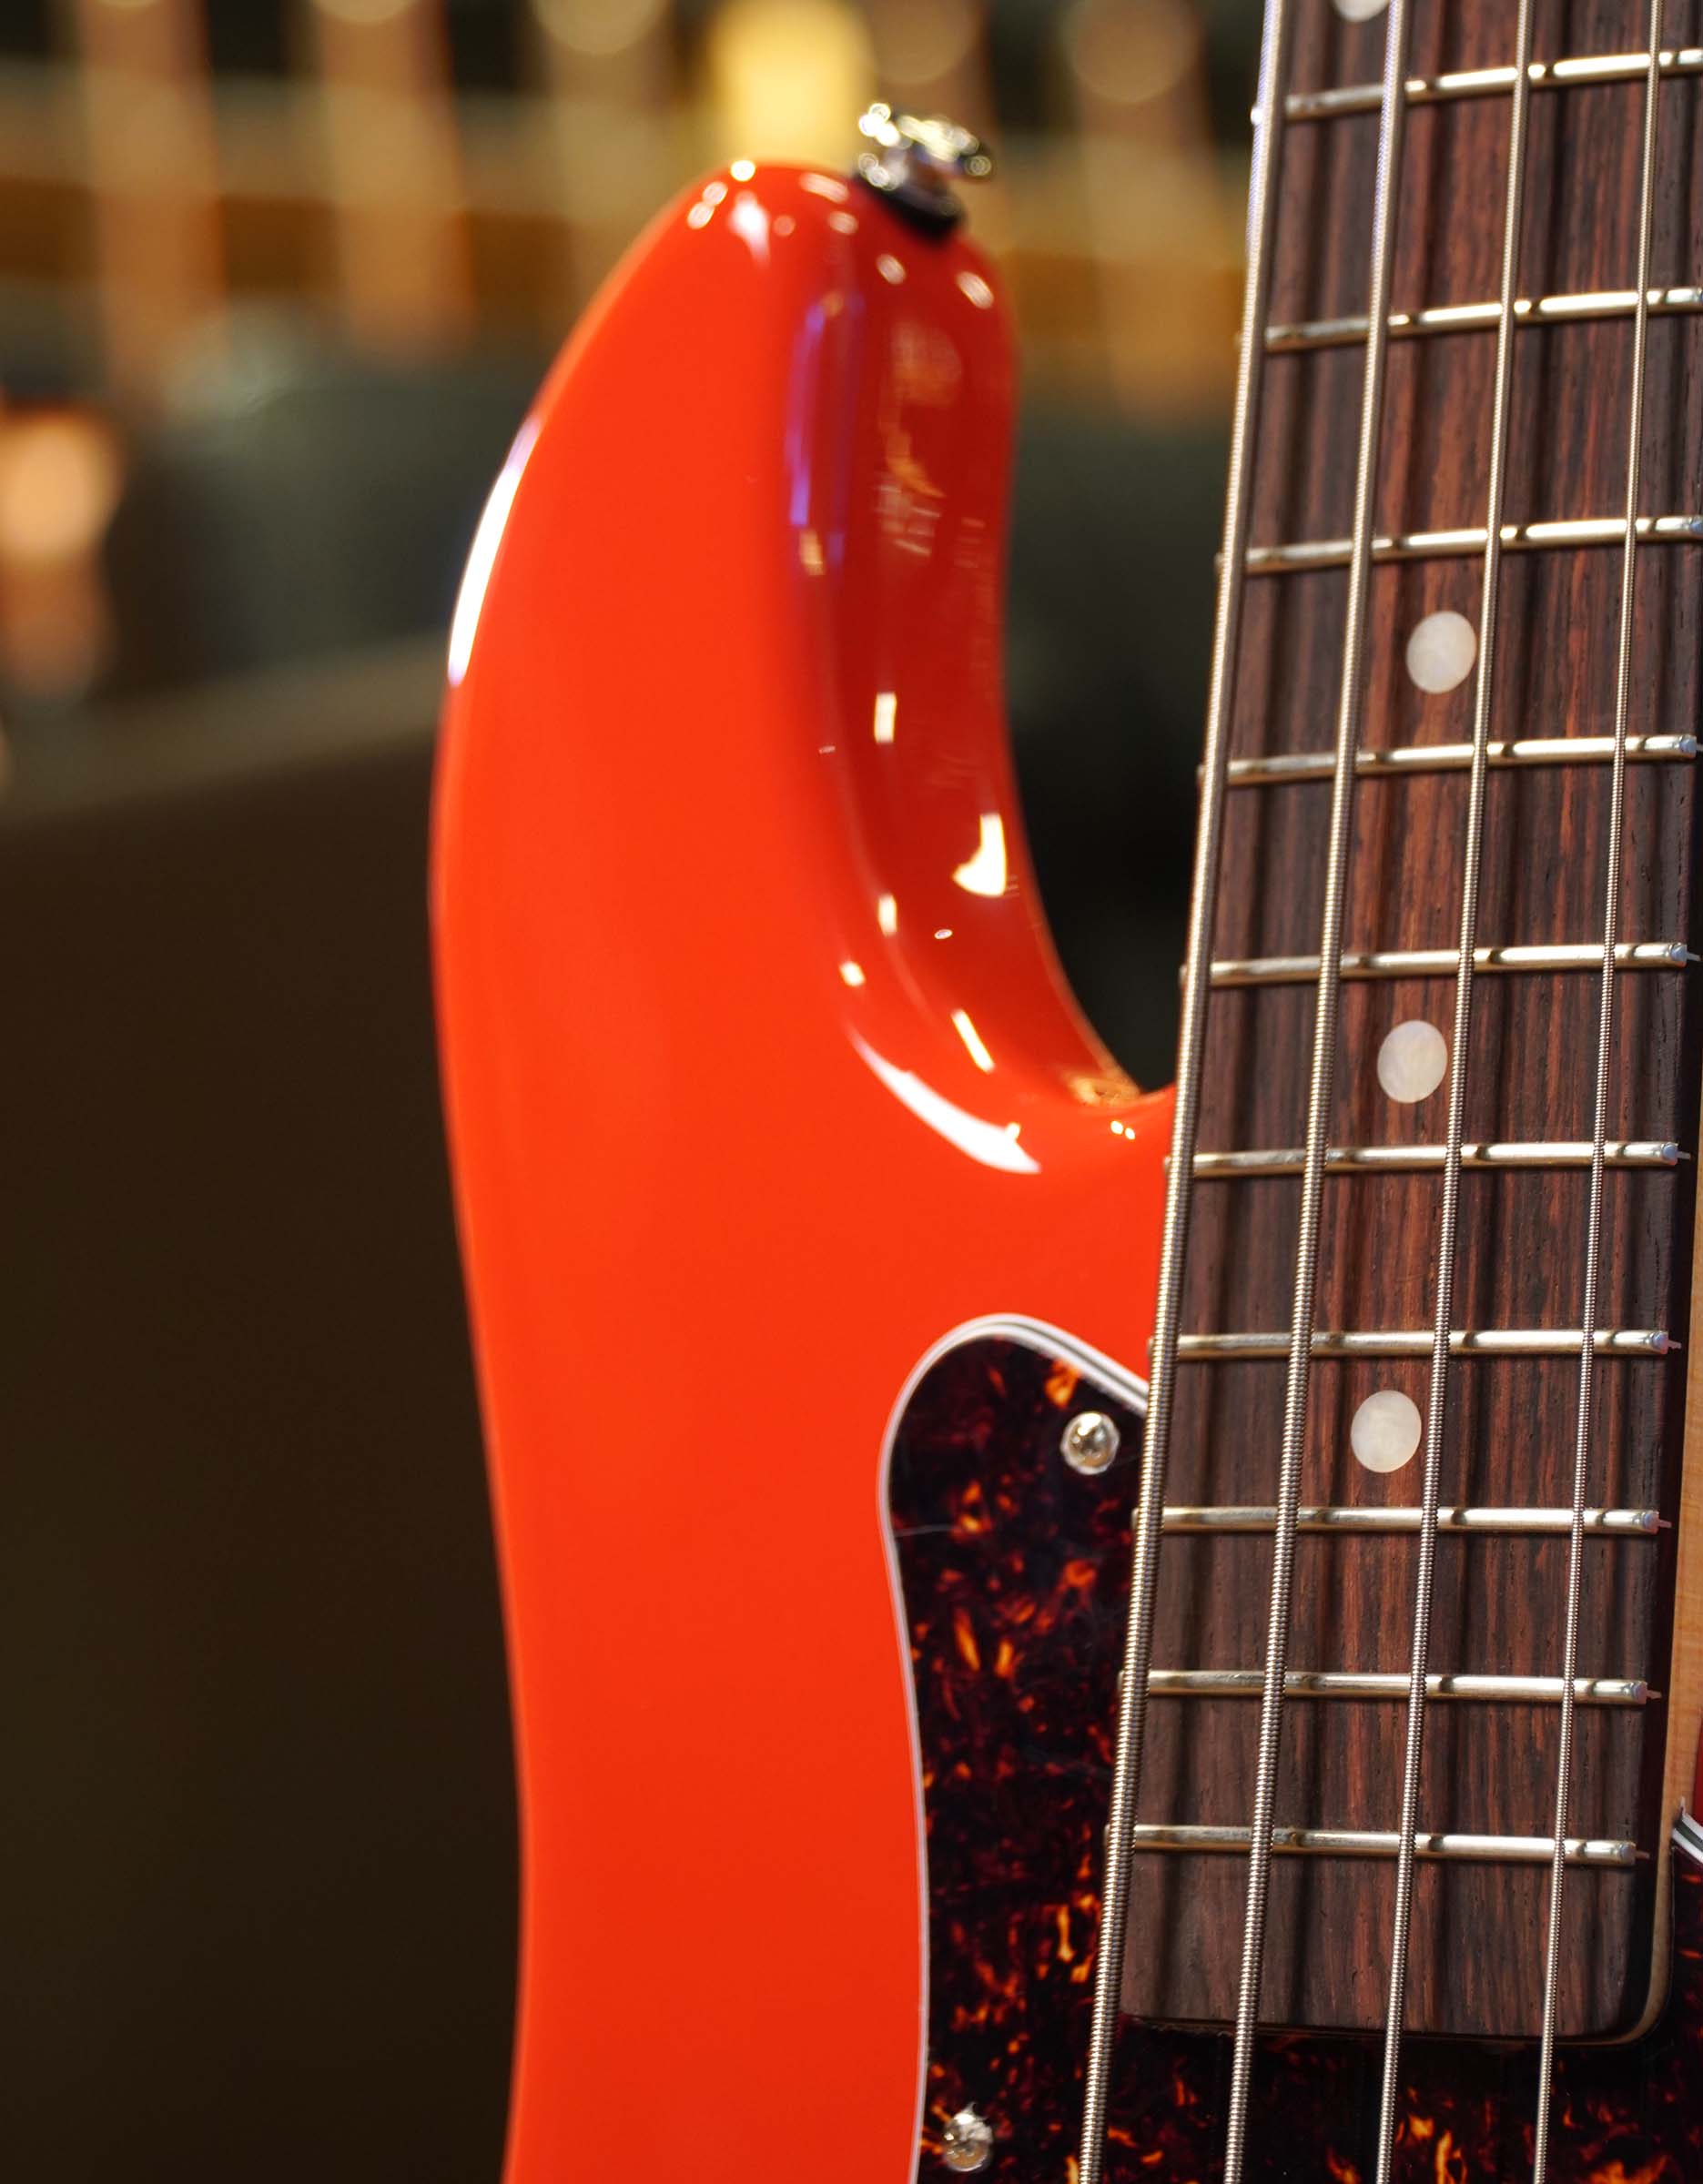 Бас-гитара G&L FD LB-100 Fullerton Red CR - купить в "Гитарном Клубе"